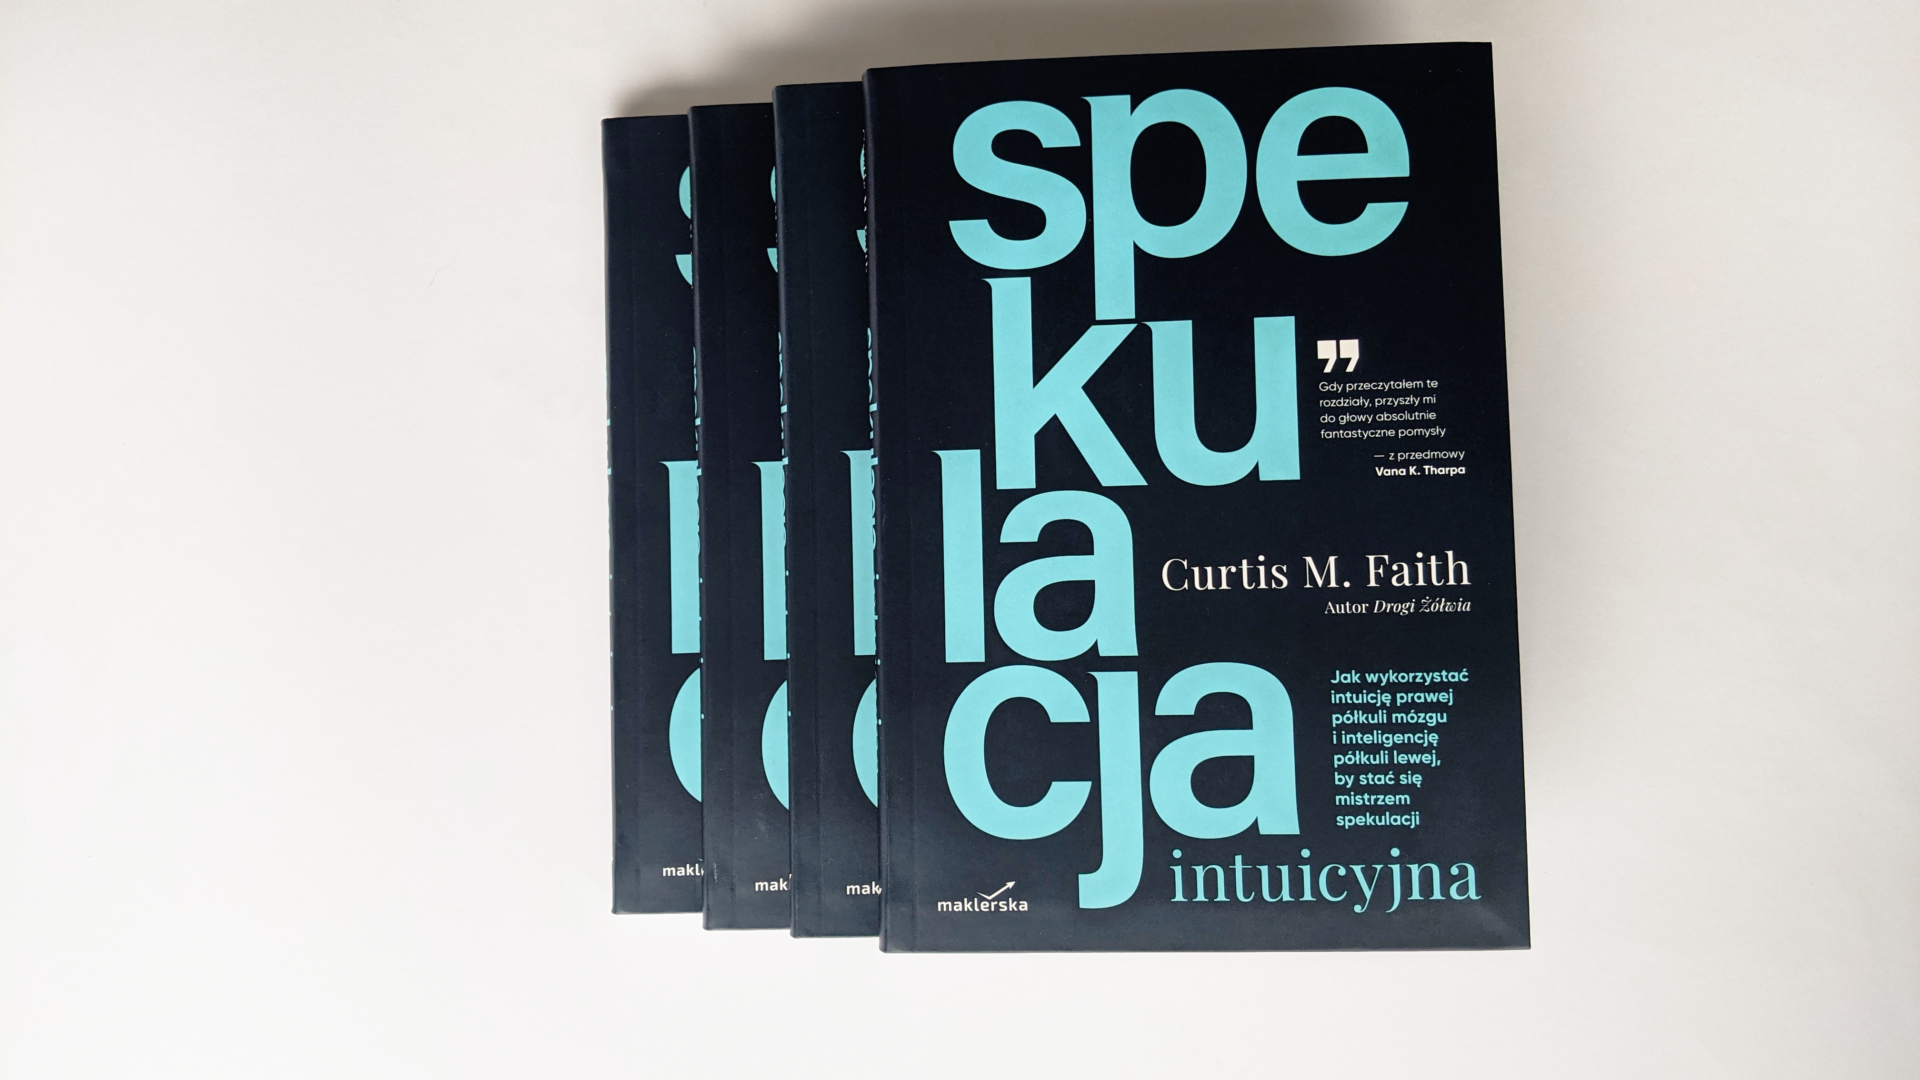 Curtis Faith “Spekulacja intuicyjna” - recenzja książki